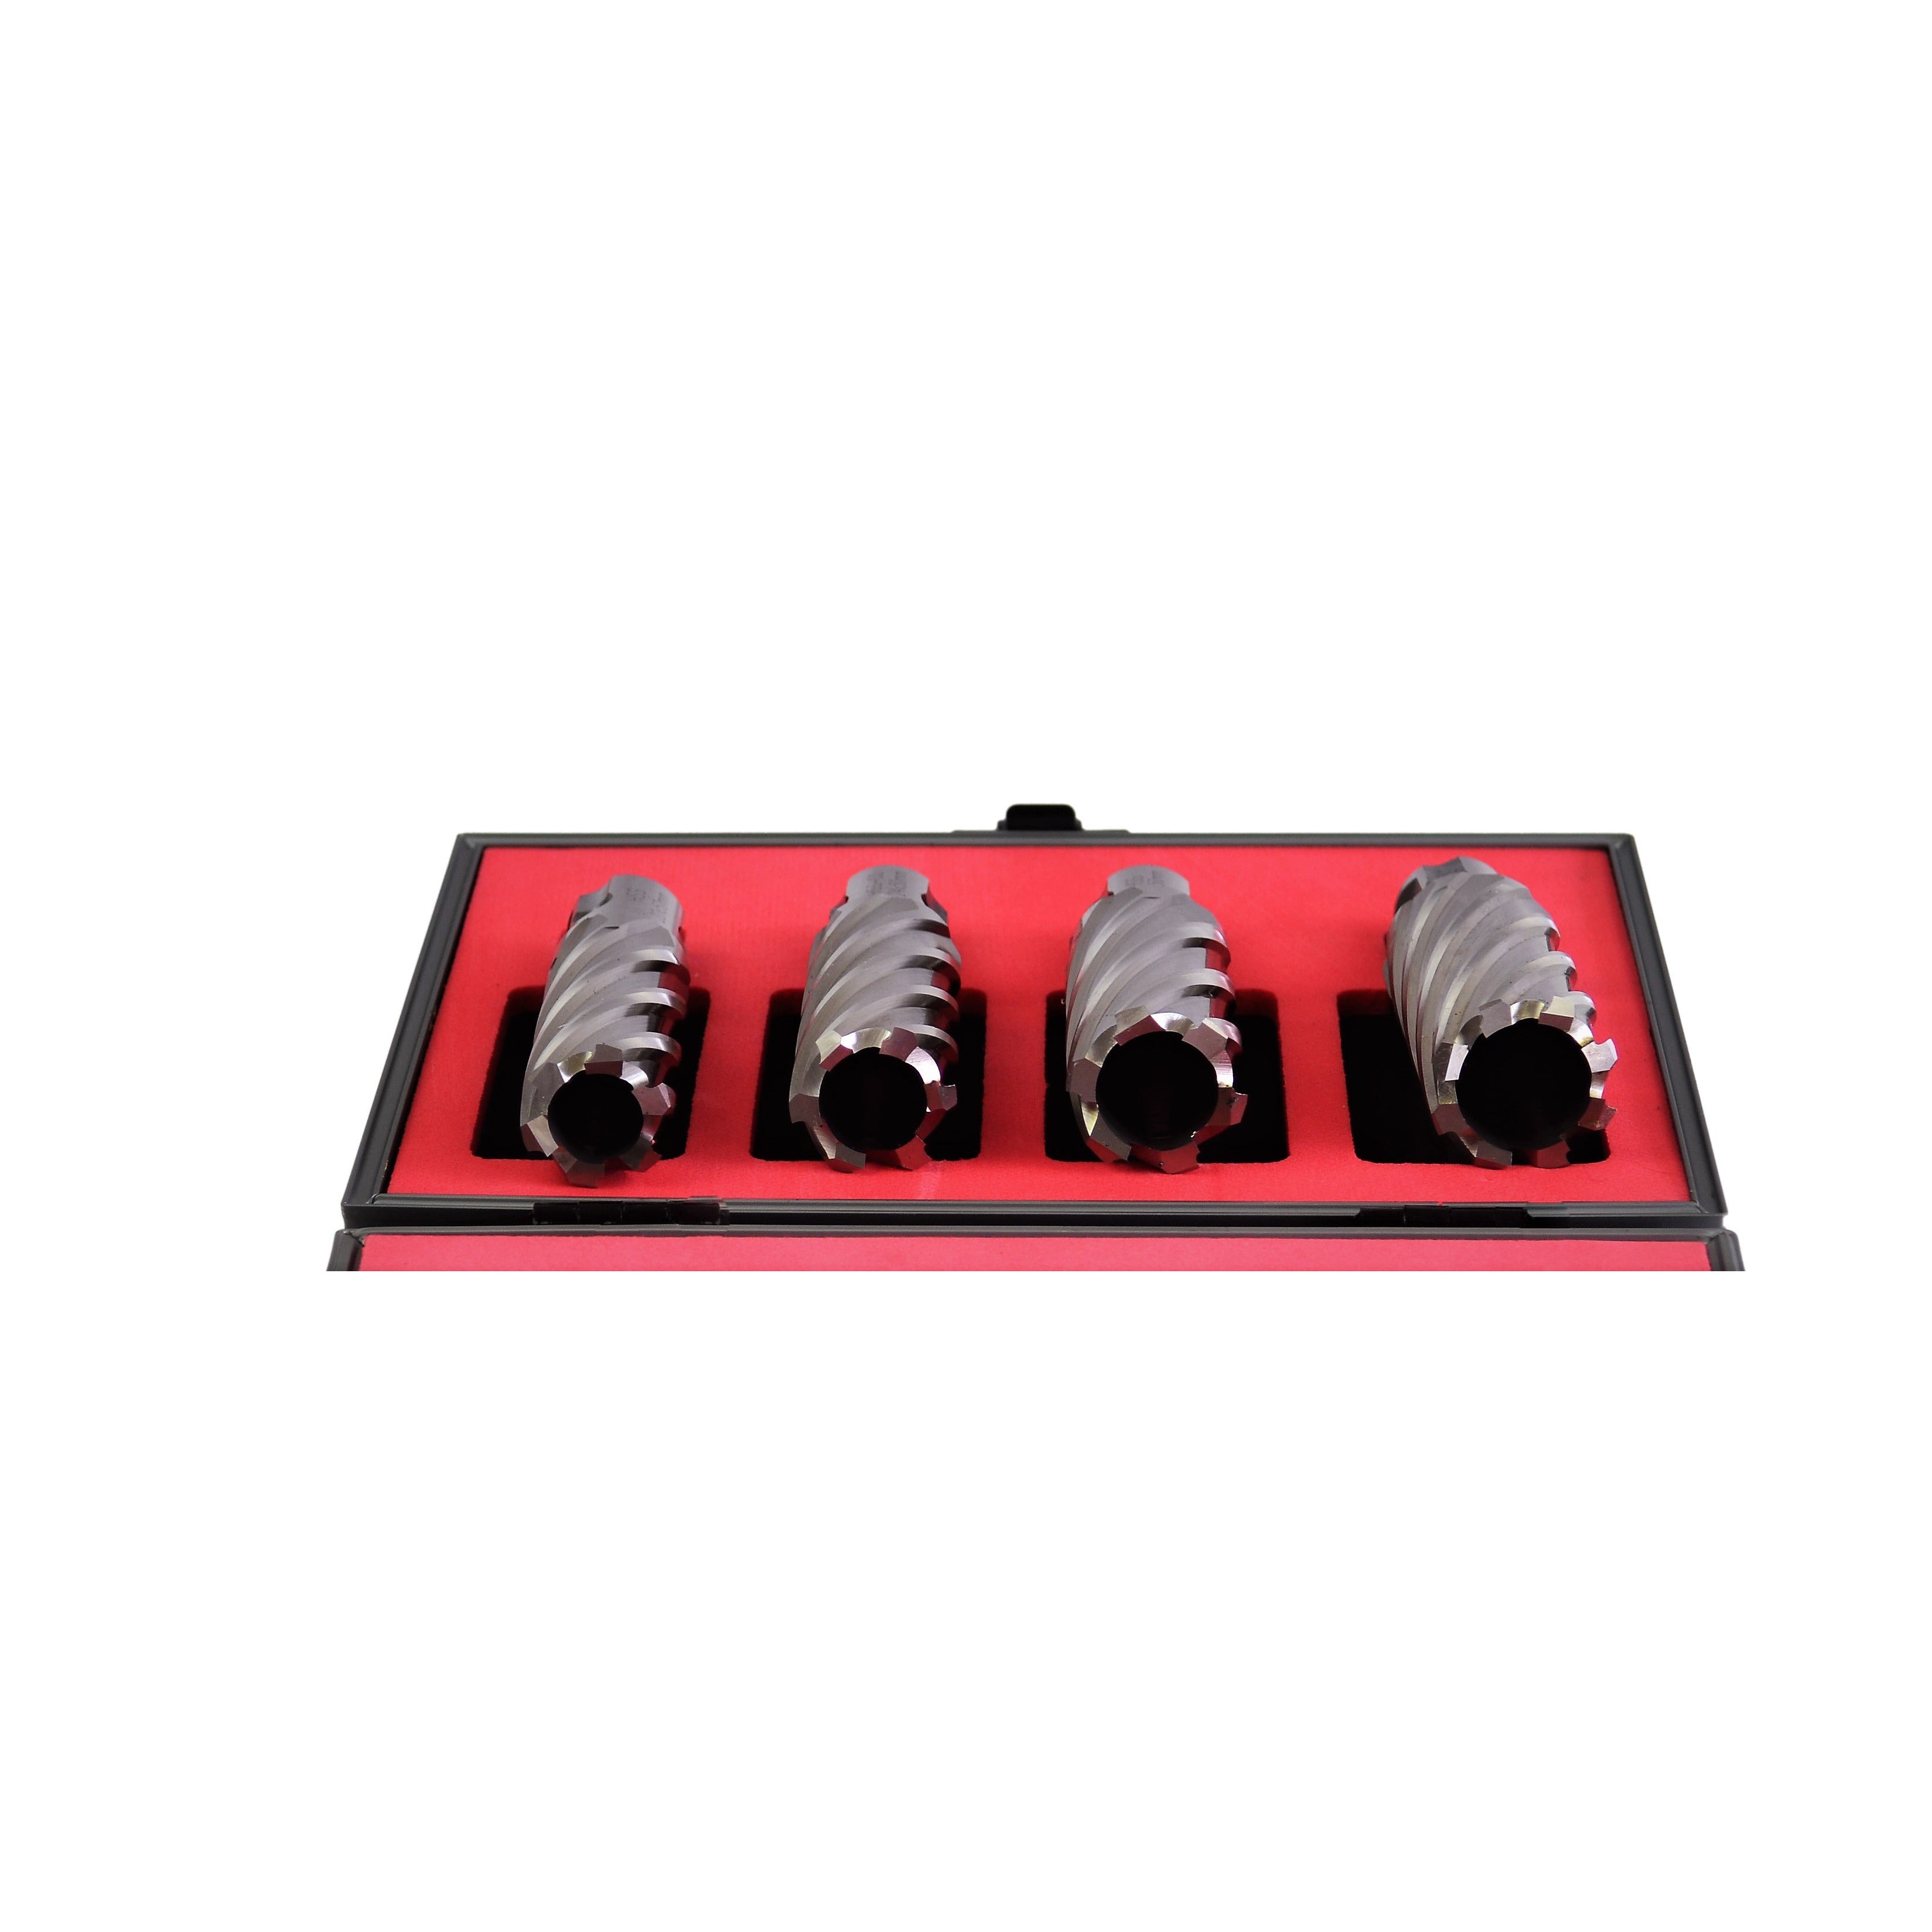 annular cutter kit assorted size 22x50,24x50,26x50,28x50mm universal shank HSS broach cutter CNC metalwork supplies industrial